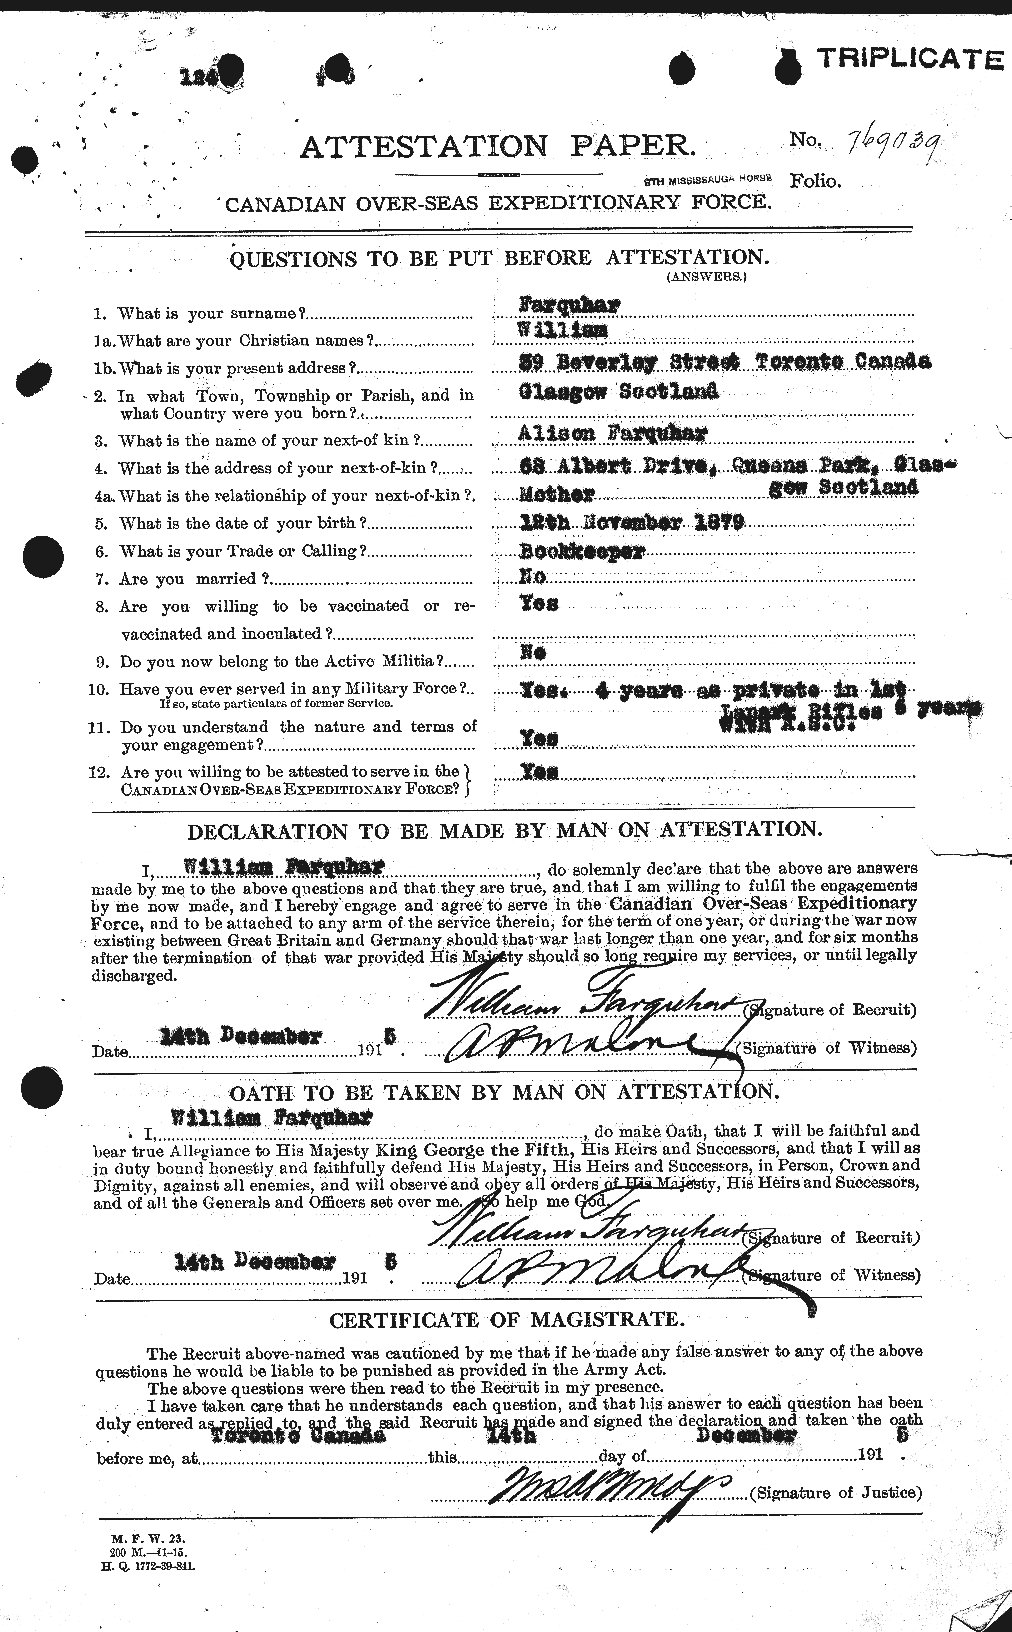 Dossiers du Personnel de la Première Guerre mondiale - CEC 319282a